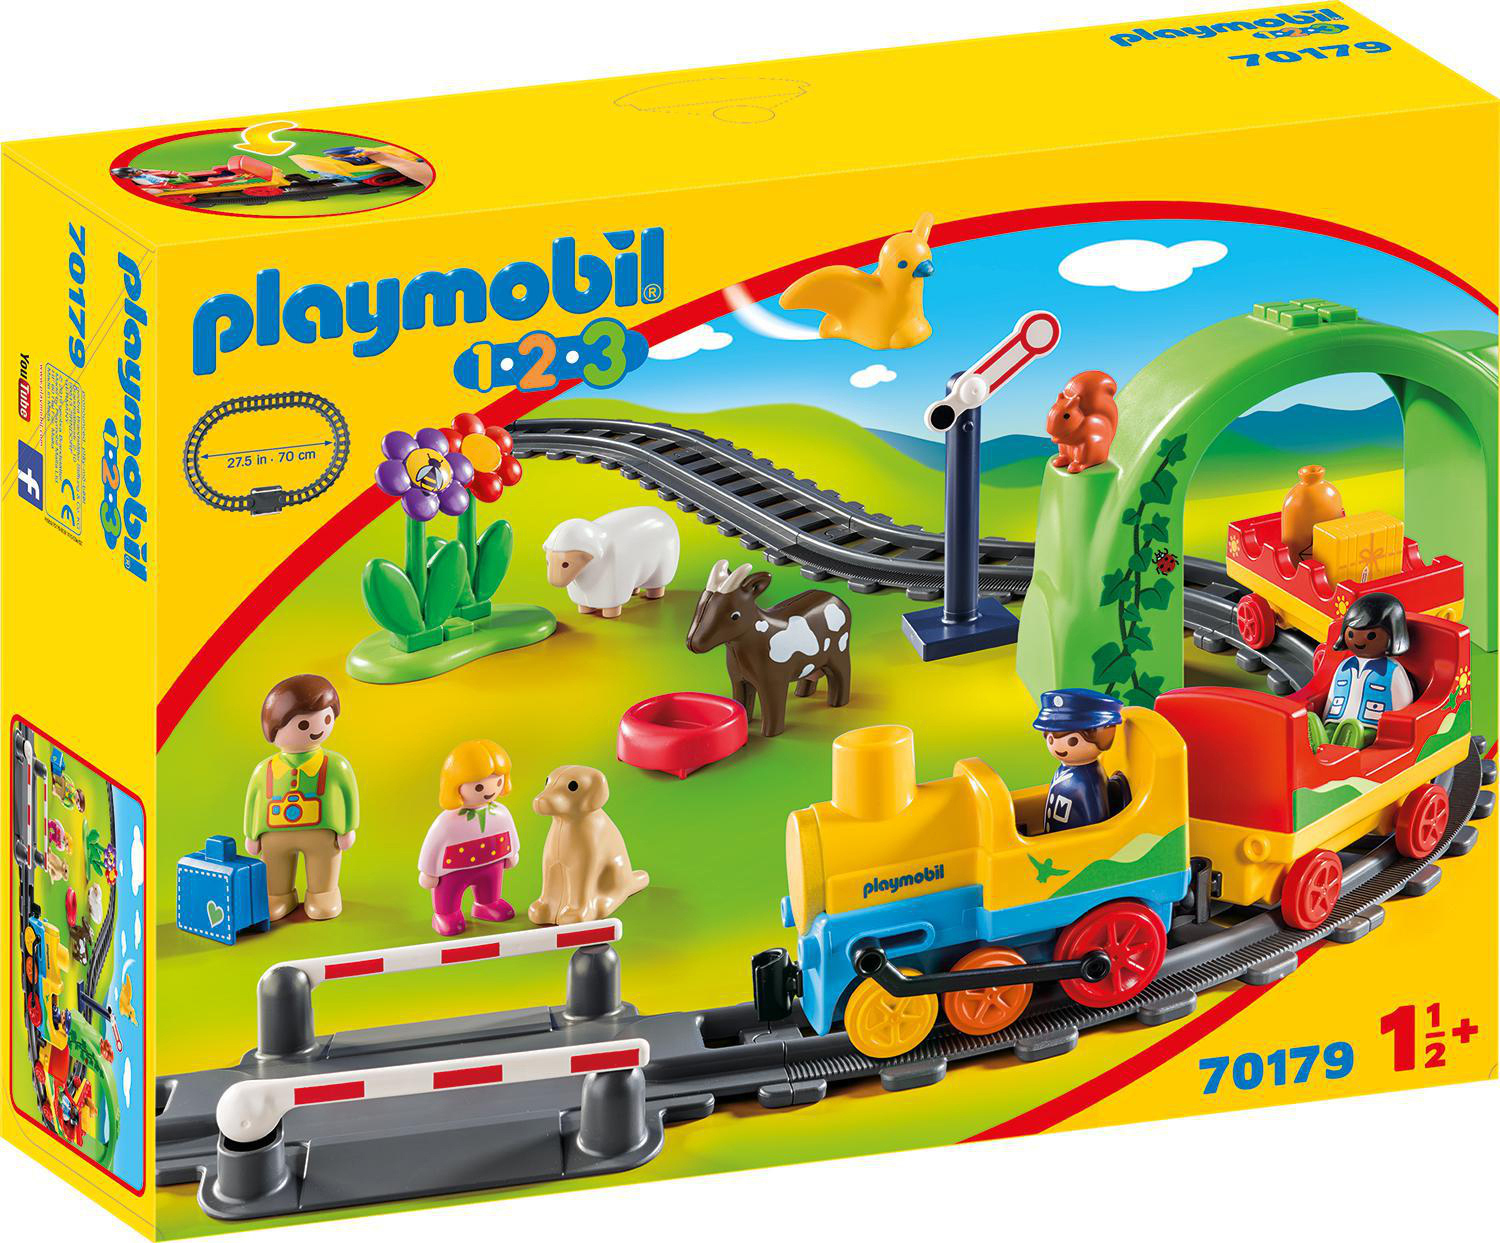 70179 PLAYMOBIL erste Mehrfarbig Spielset, Meine Eisenbahn